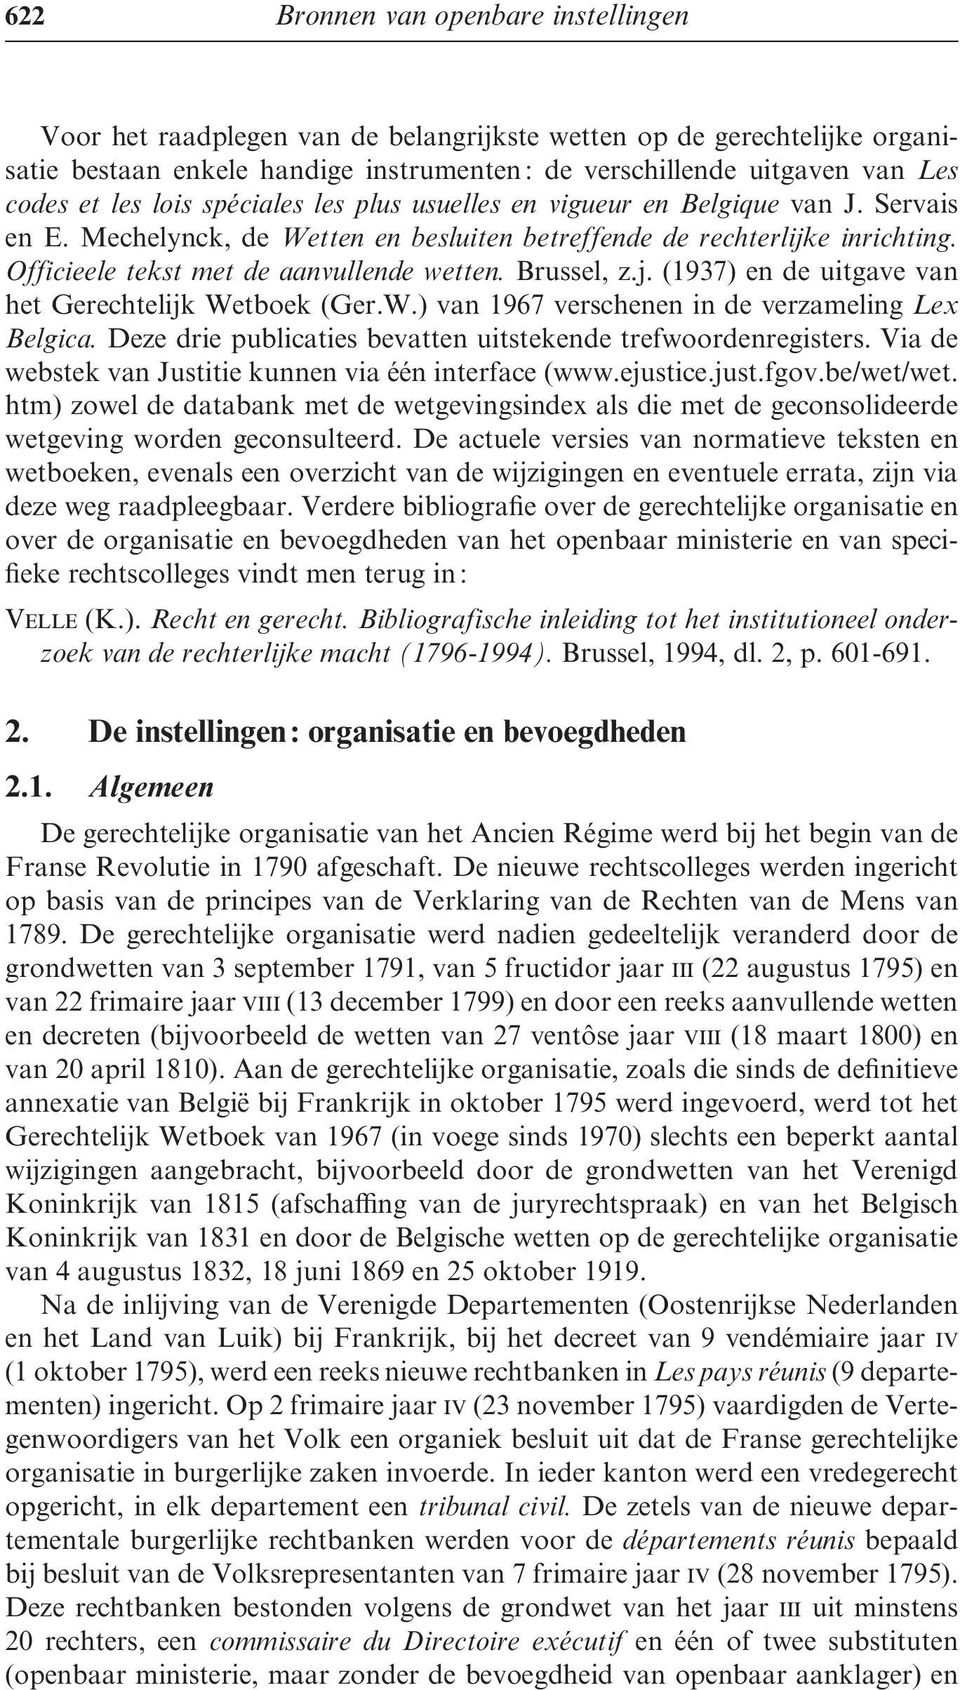 Brussel, z.j. (1937) en de uitgave van het Gerechtelijk Wetboek (Ger.W.) van 1967 verschenen in de verzameling Lex Belgica. Deze drie publicaties bevatten uitstekende trefwoordenregisters.